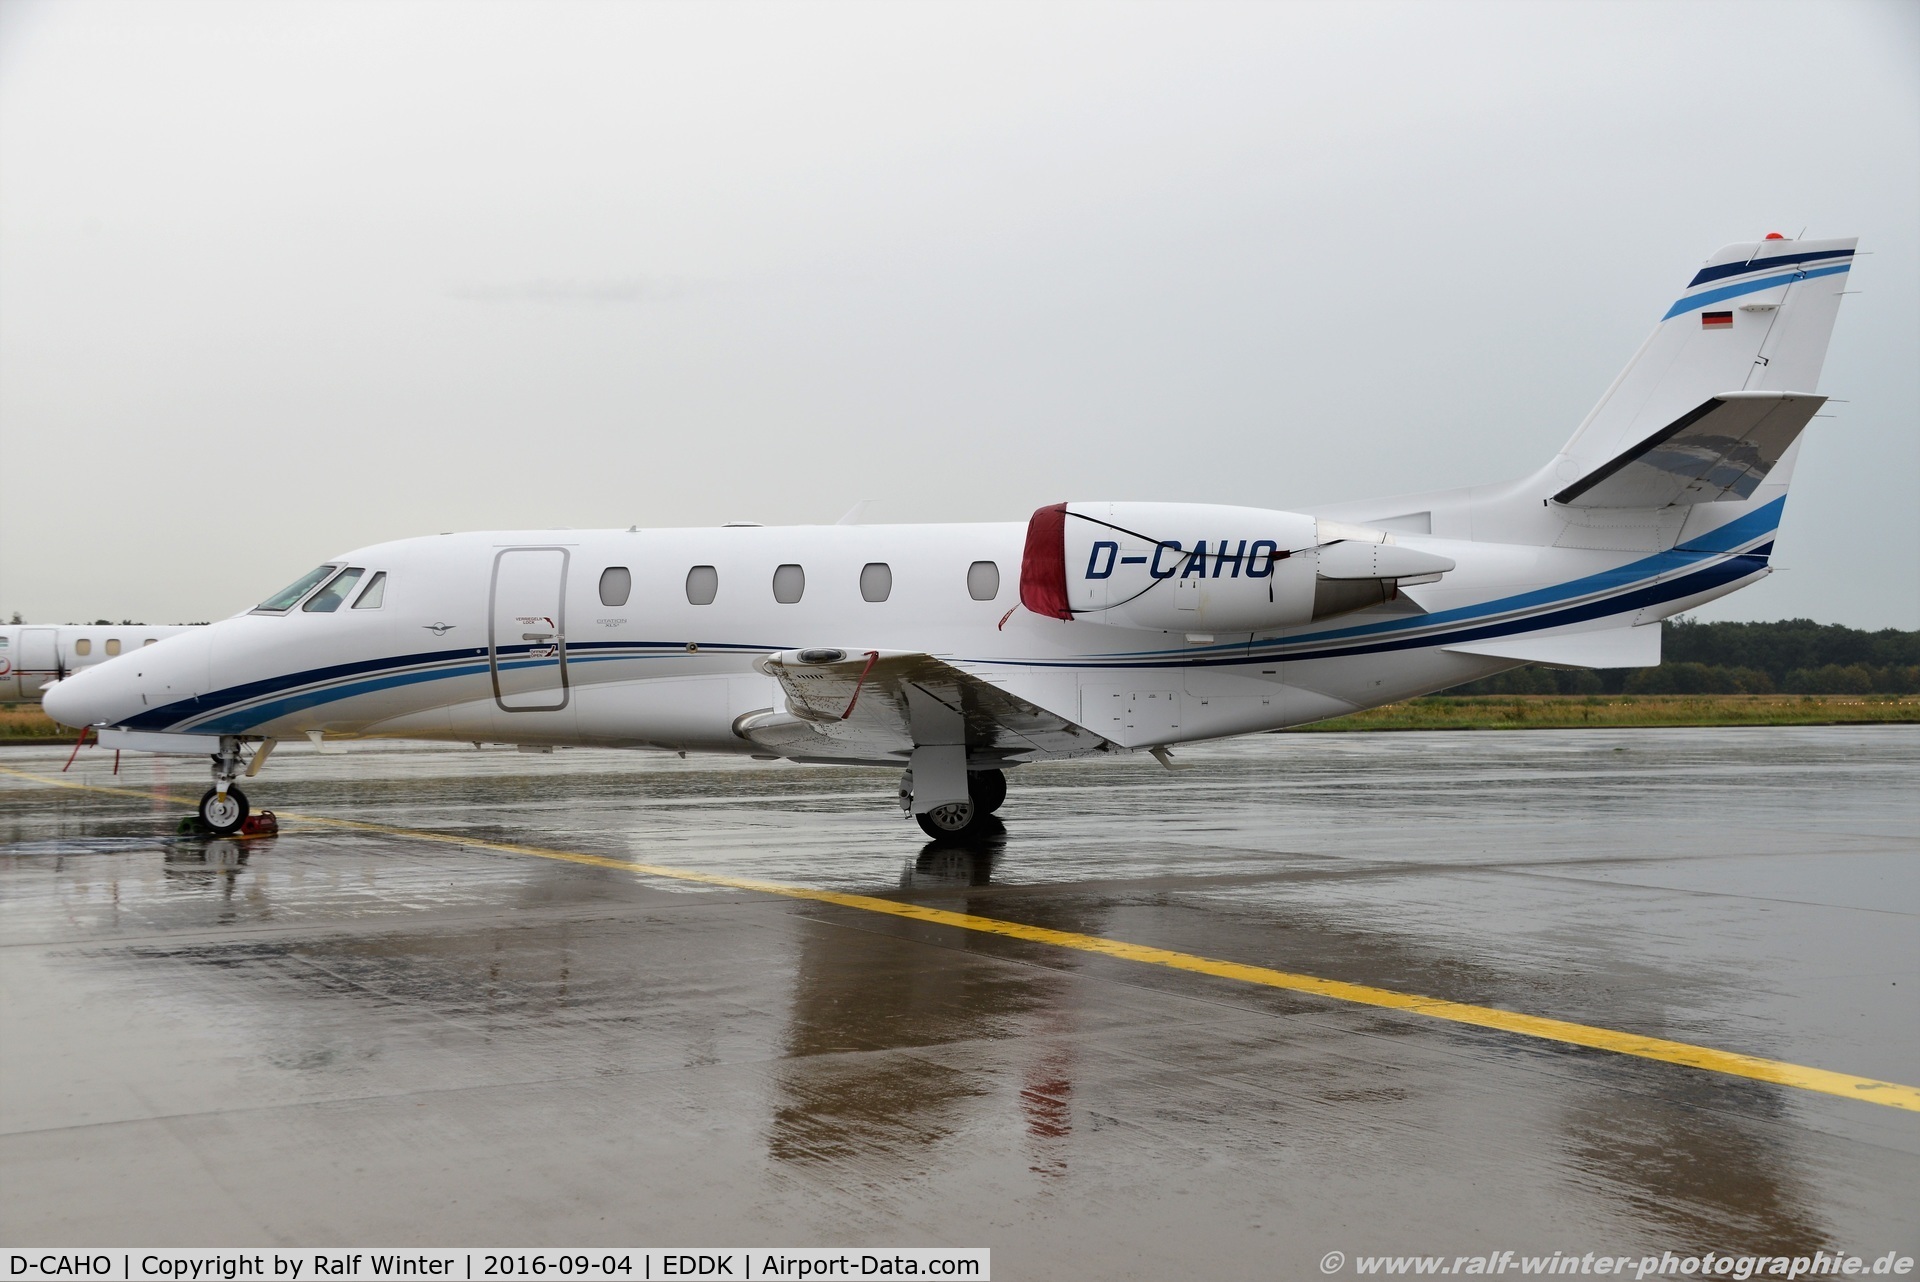 D-CAHO, 2014 Cessna 560 Citation Excel XLS+ C/N 560-6165, Cessna 560XL Citation XLS+ - AHO Air Hamburg - 560-6165 - D-CAHO - 04.09.2016 - CGN